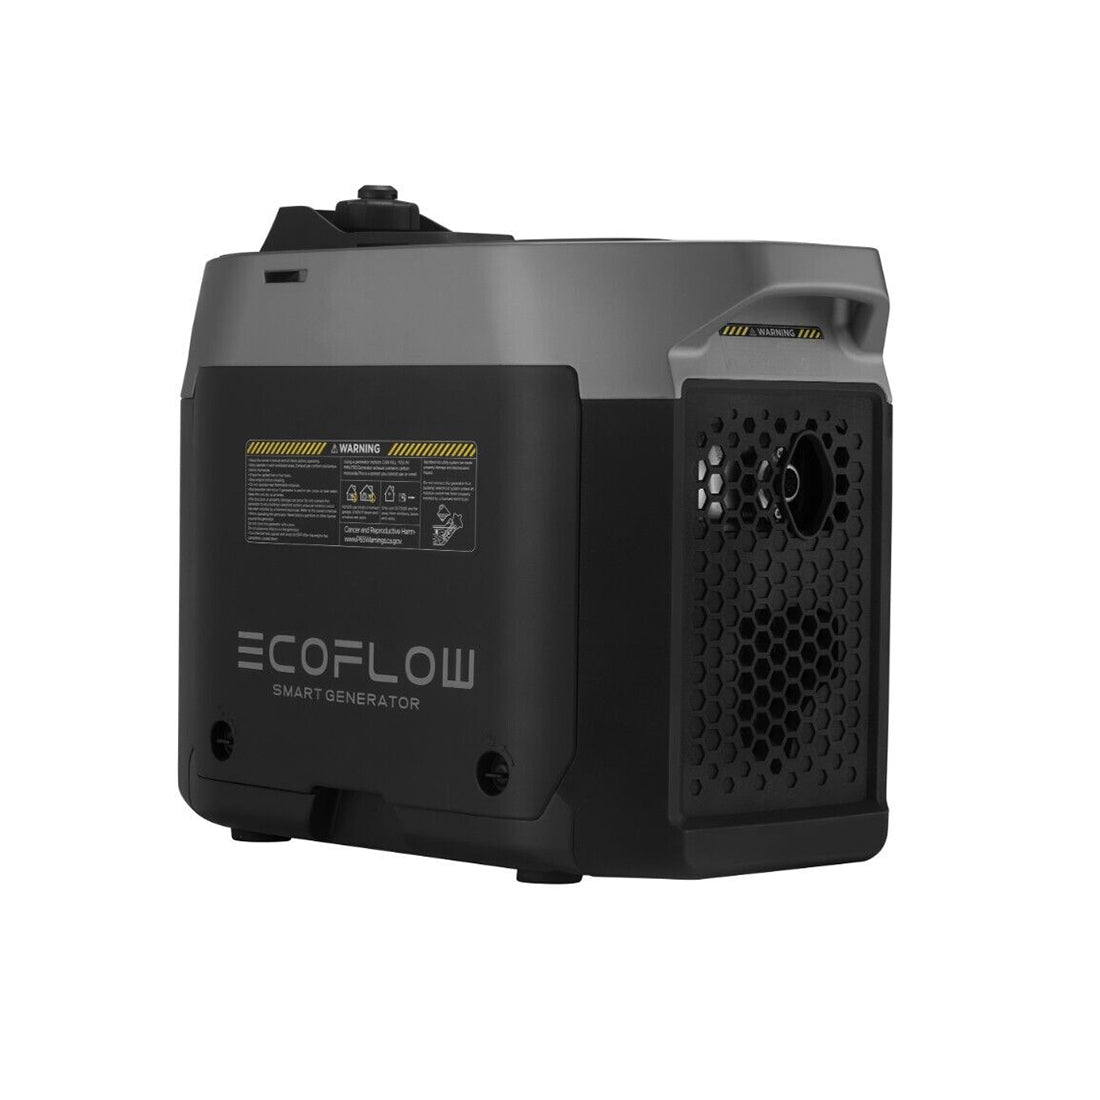 ECOFLOW Smart Gas Generator